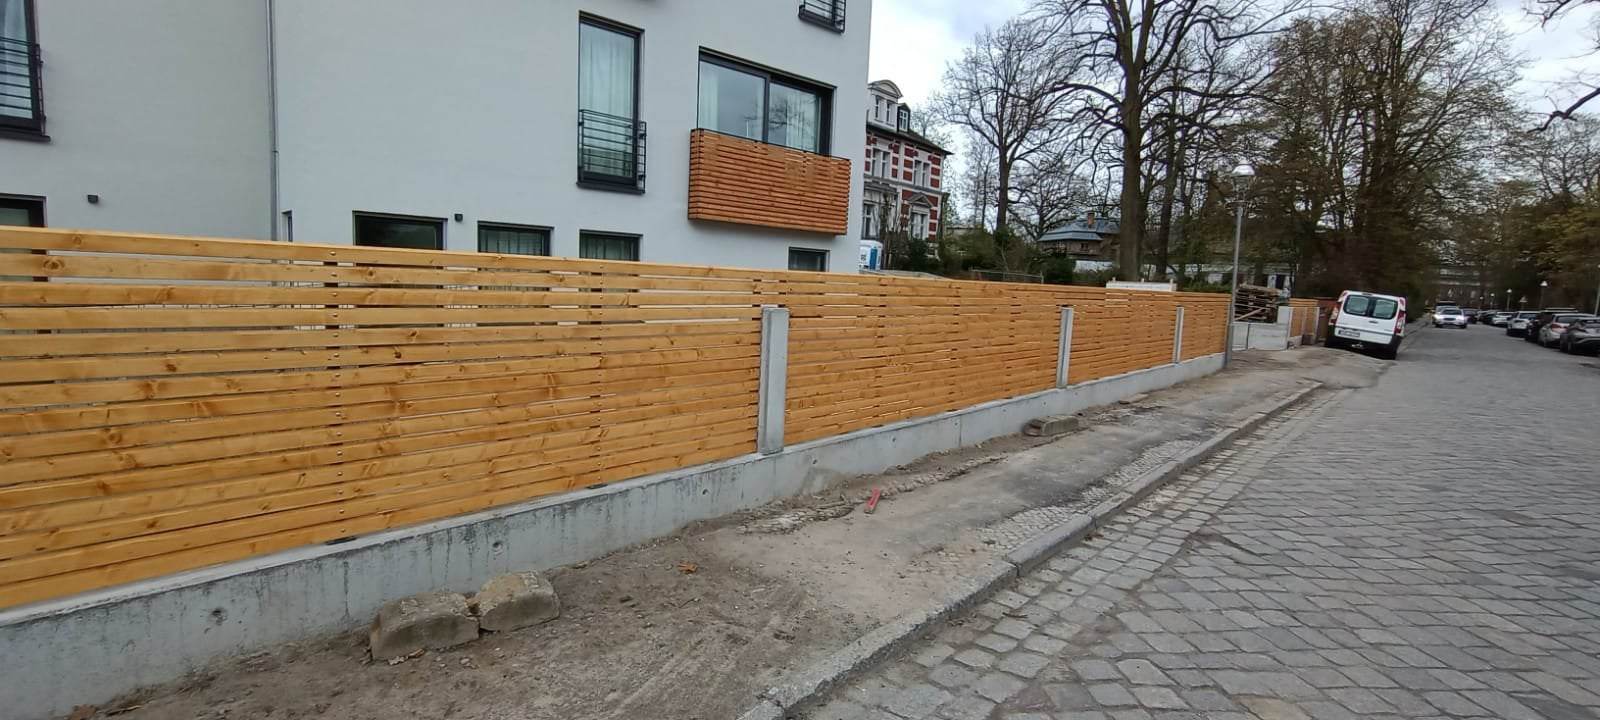 Ogrodzenia ogrodzenie plot fence nowoczesne ogrodzenie ogrodzenie panelowe ogrodzenie aluminiowe ogrodzenie alu brama furtka brama przesuwna deska kompozyt